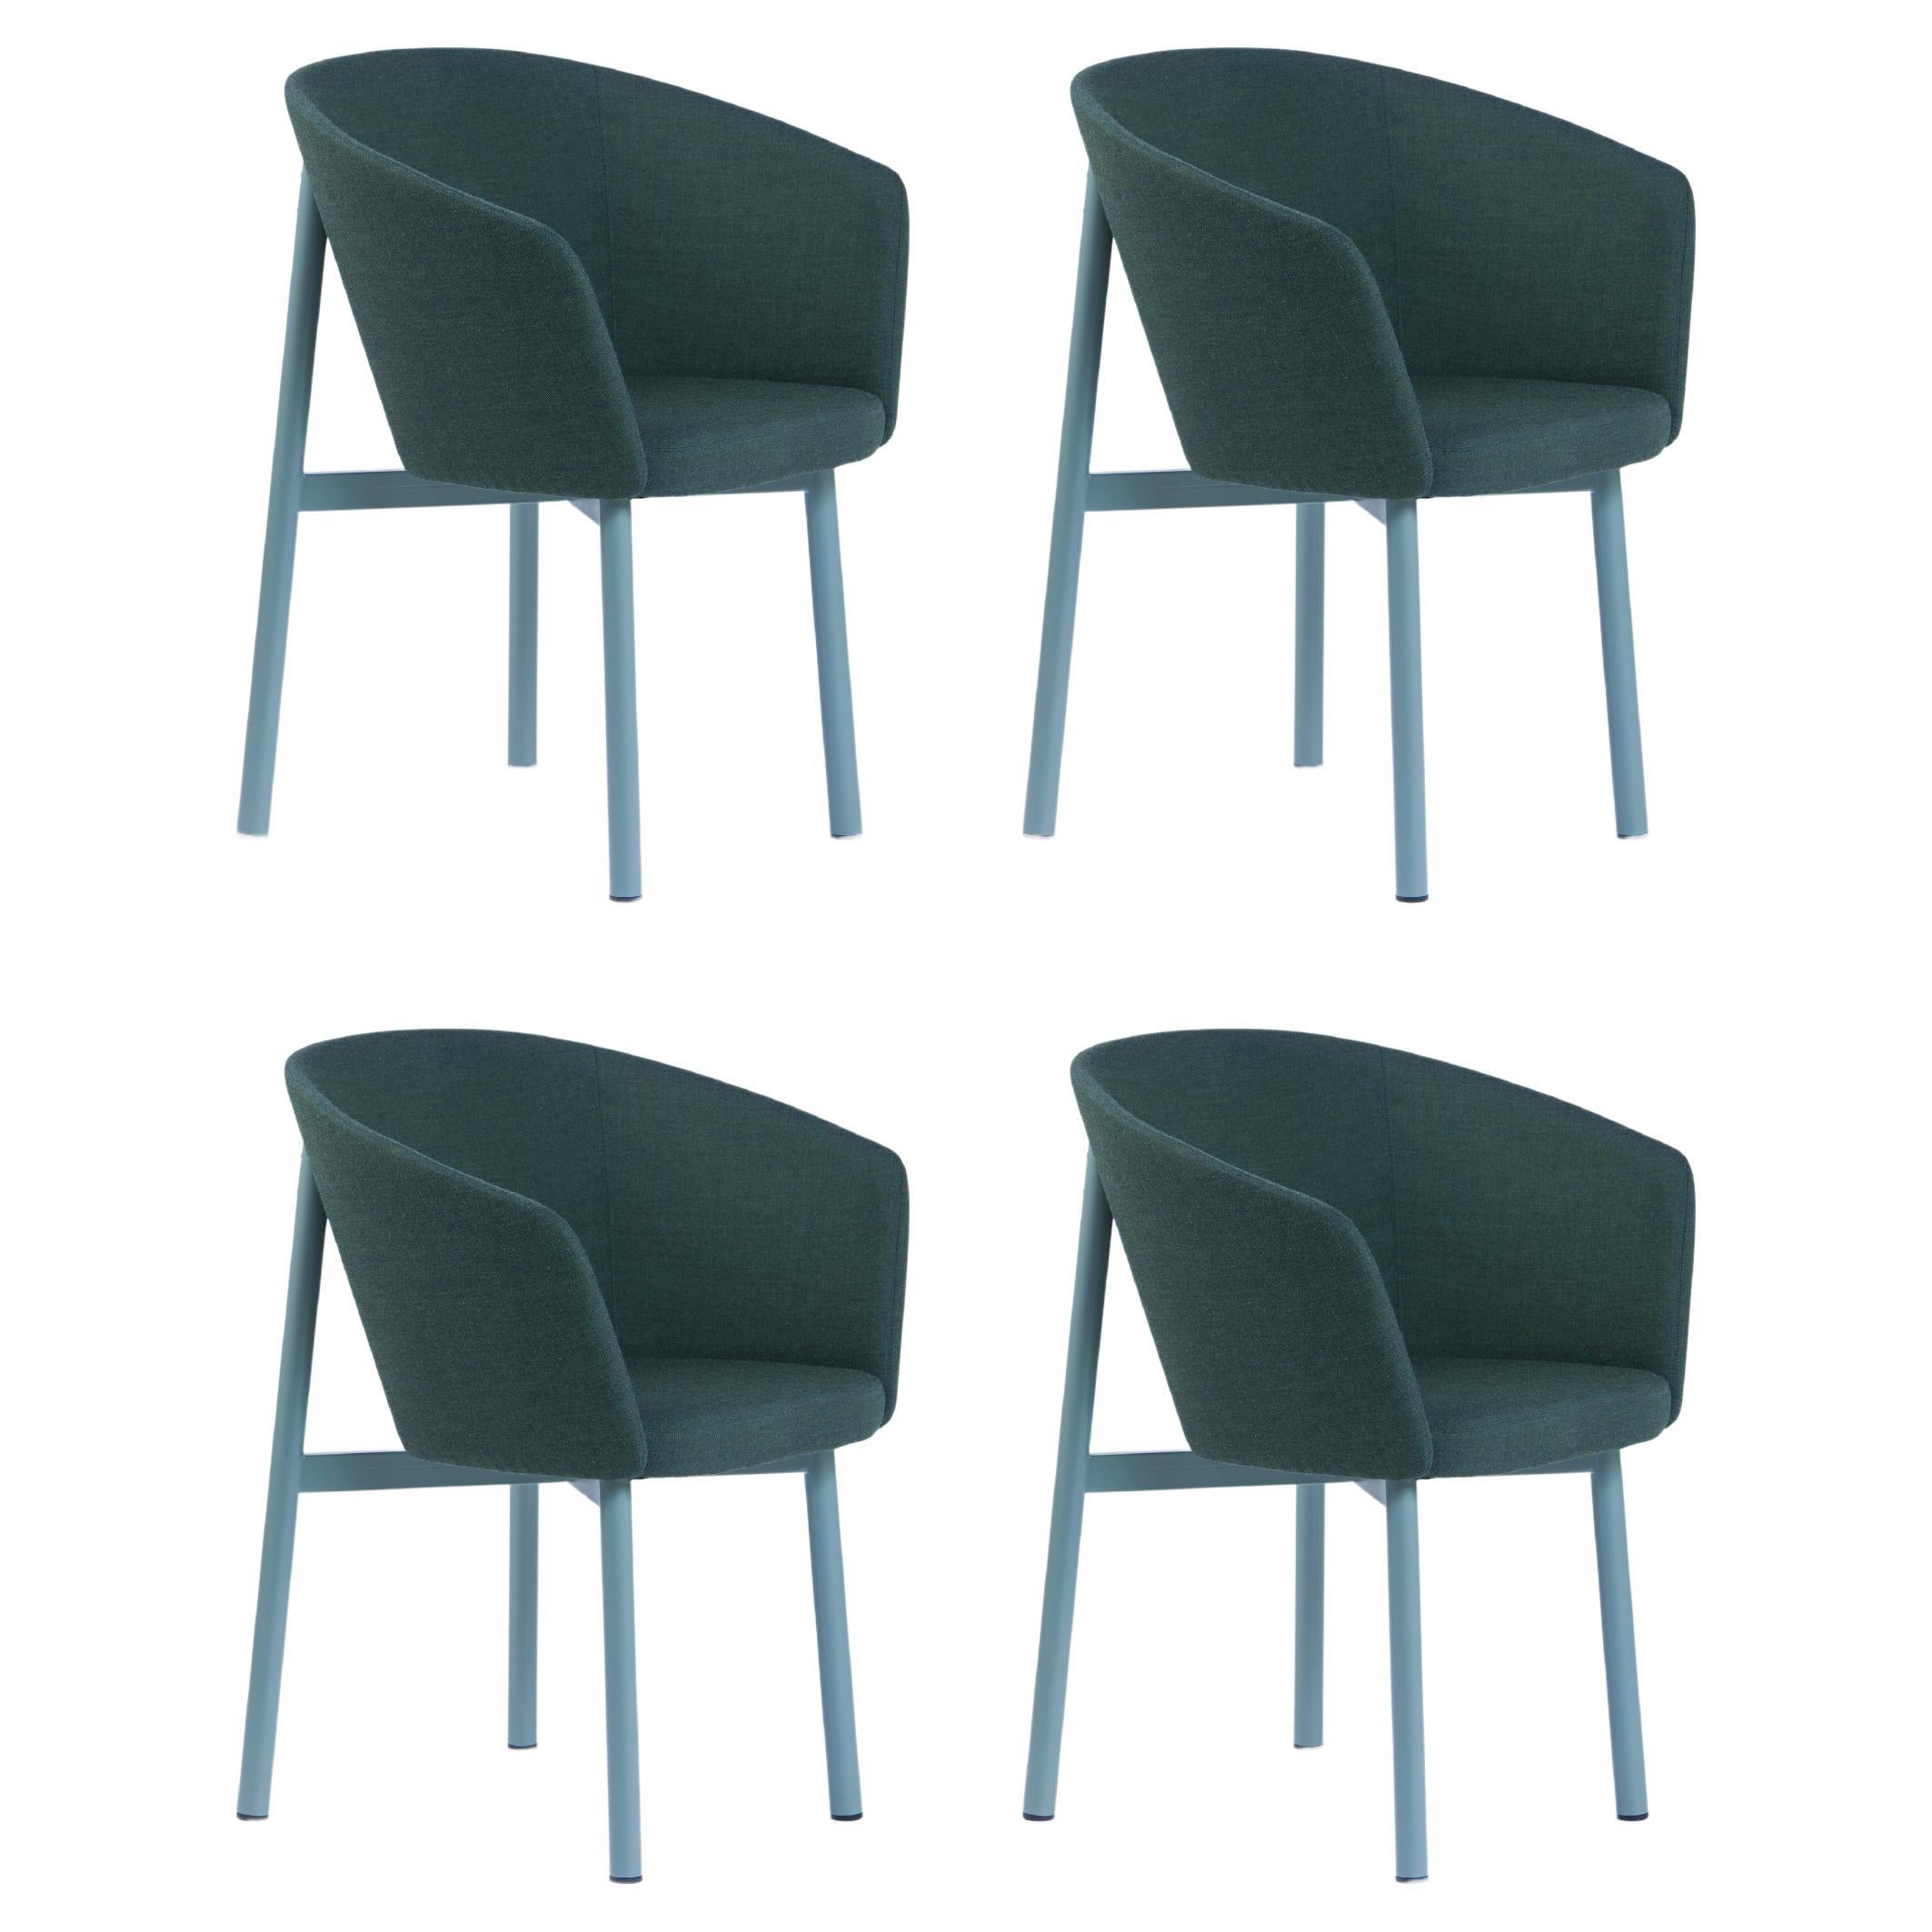 Satz von 4 grünen Residence Bridge-Sesseln von Kann Design